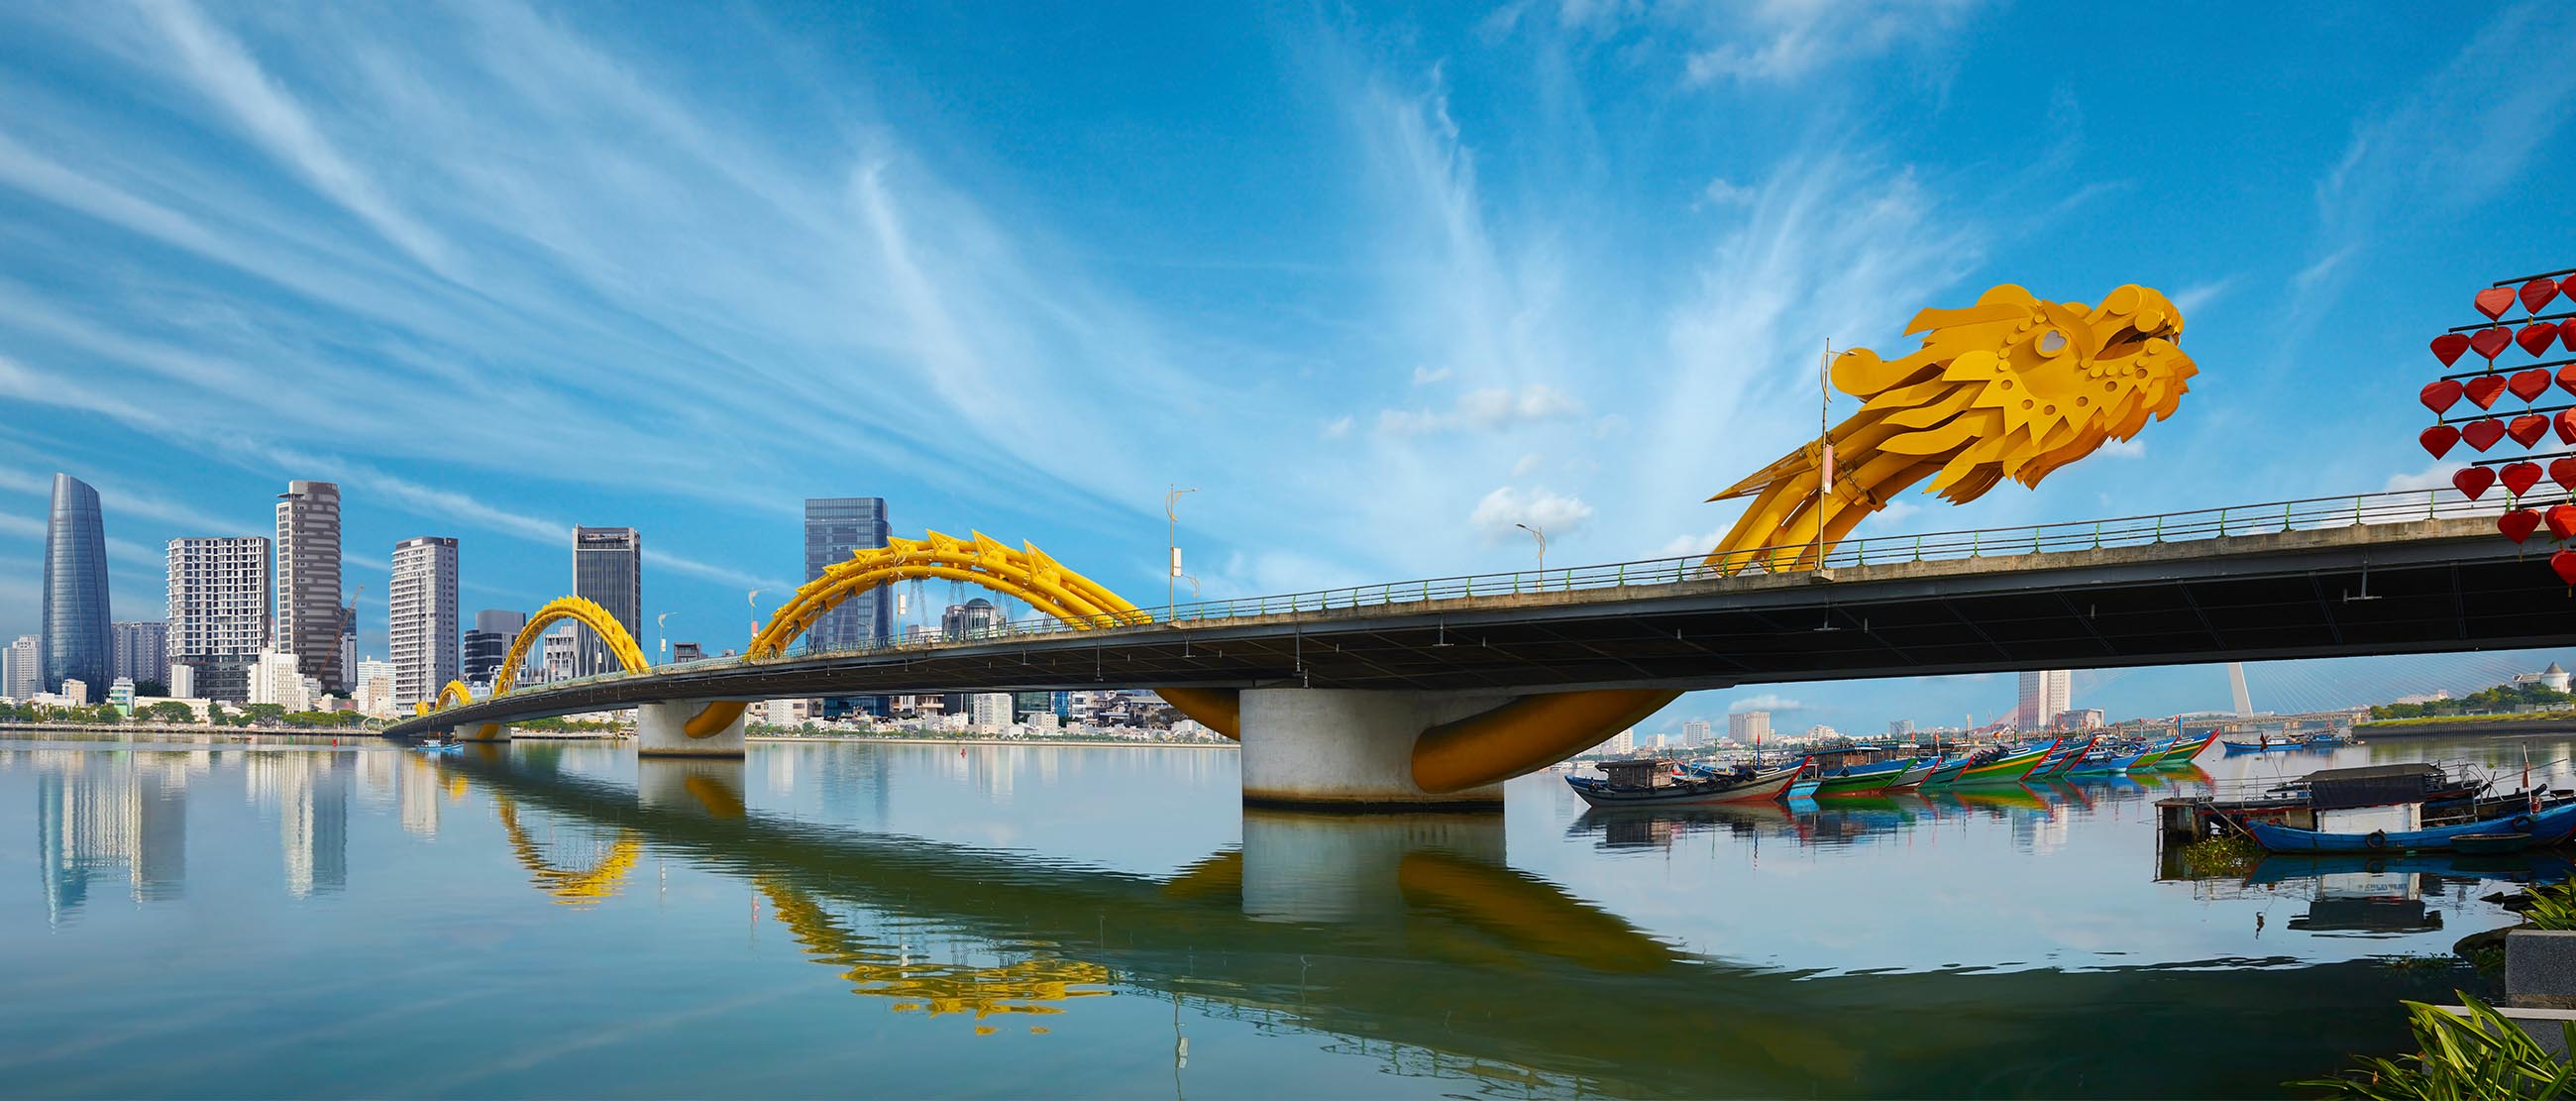 Cầu Rồng Đà Nẵng không chỉ là một công trình kiến trúc ấn tượng